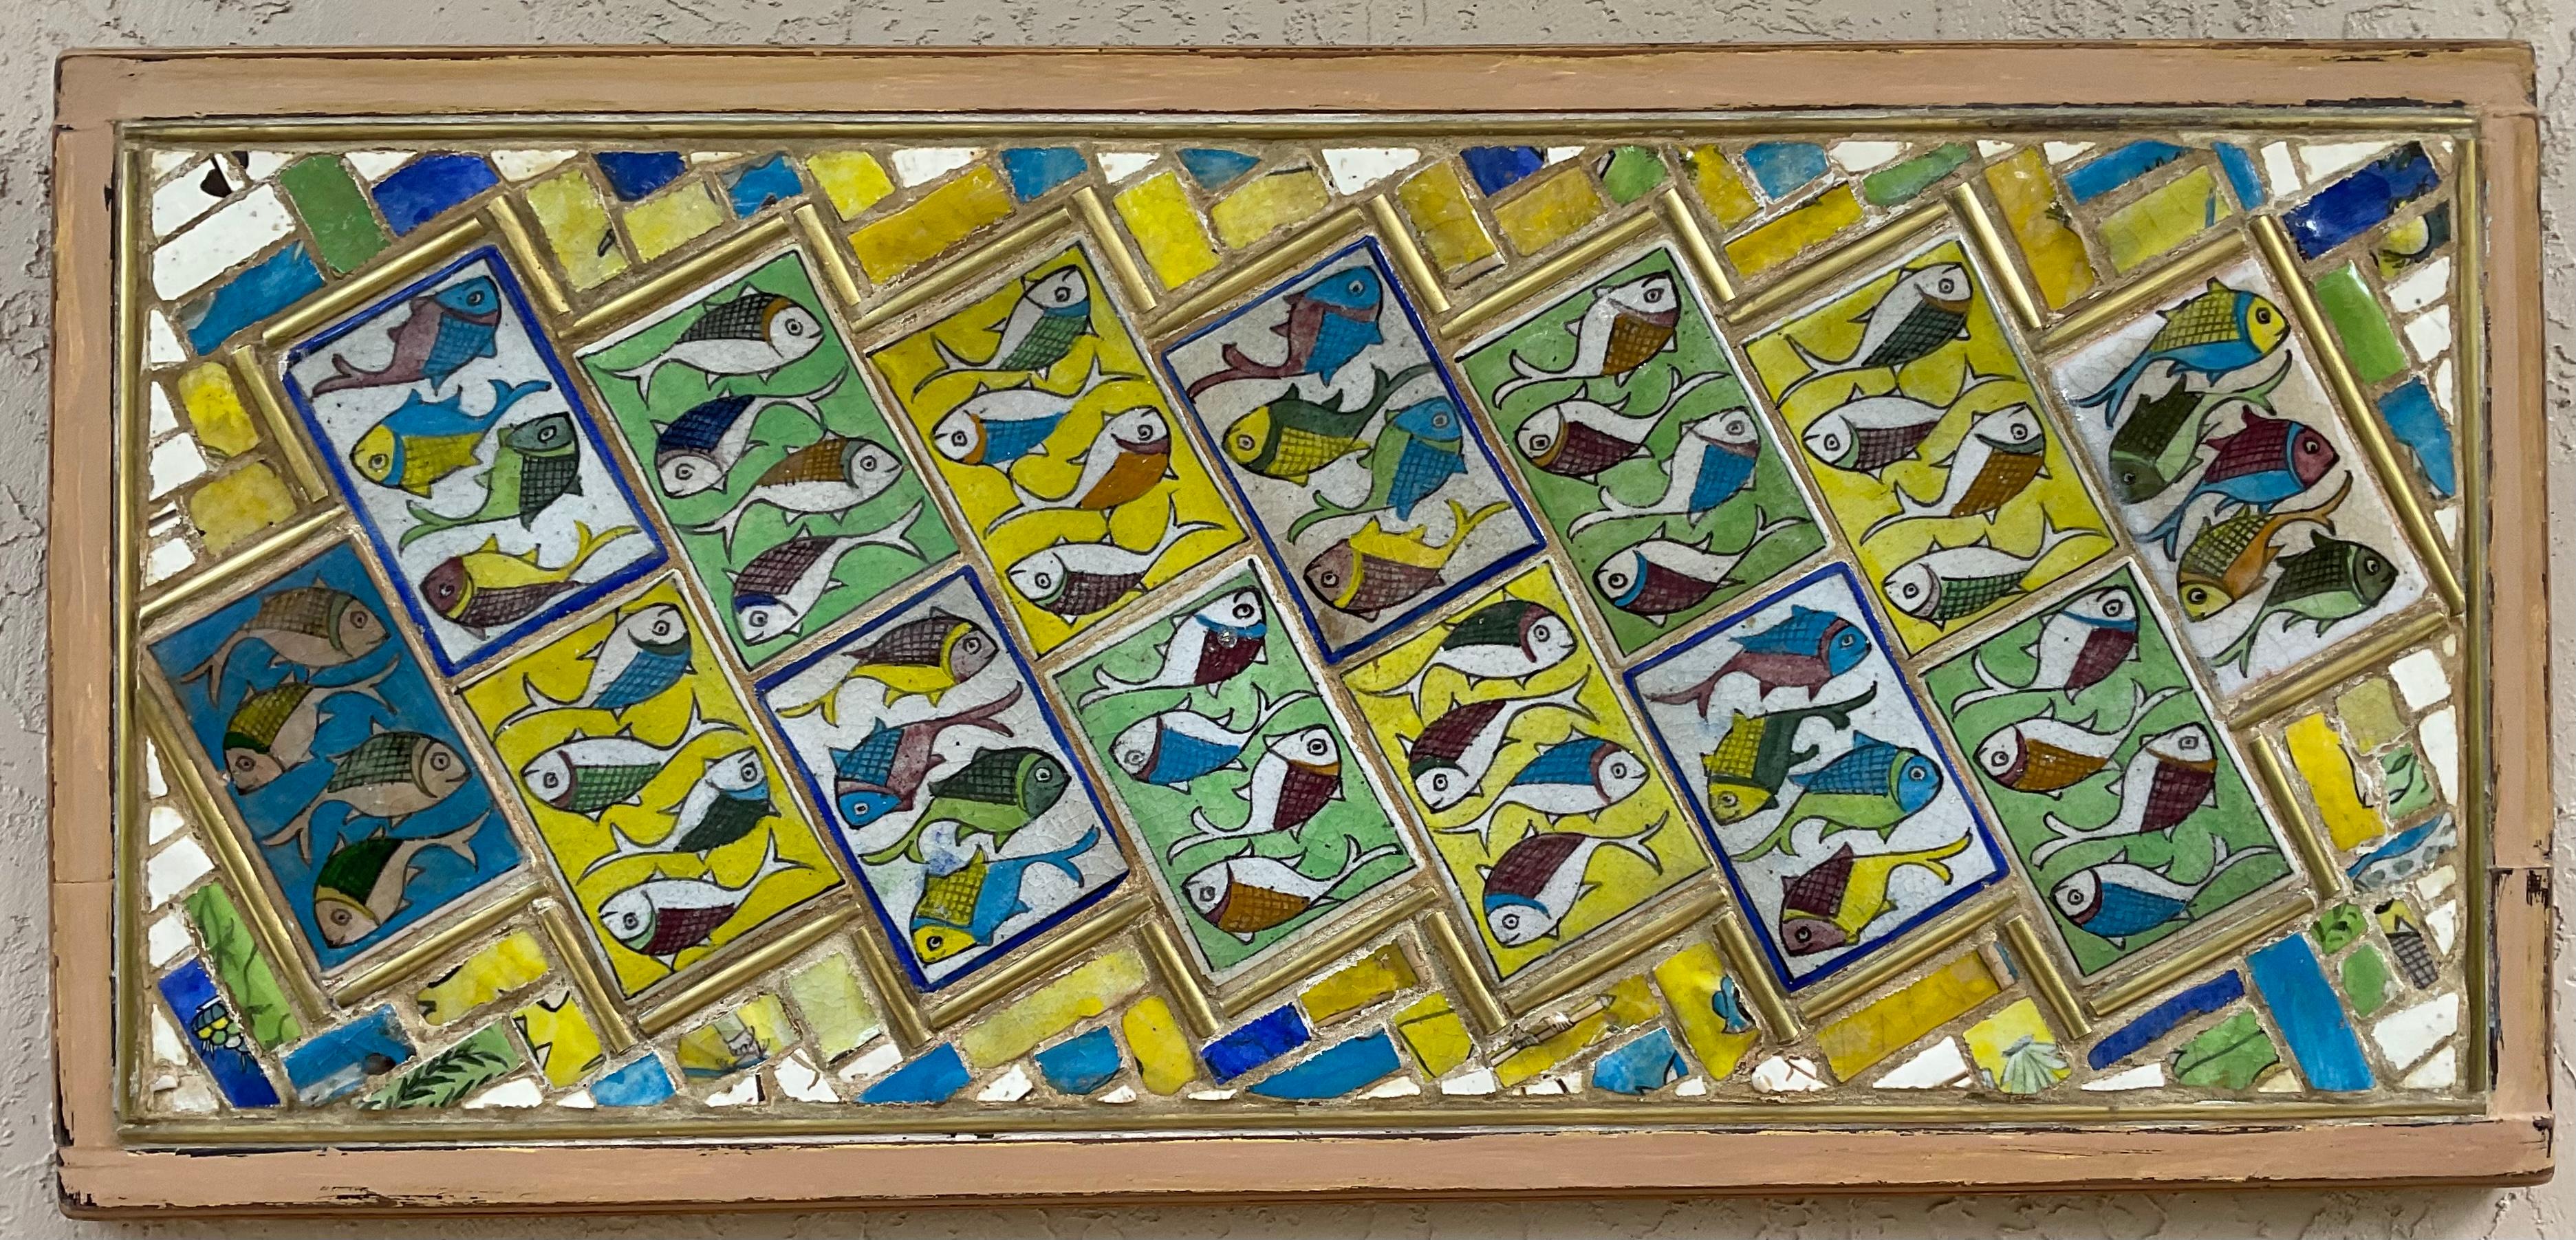 Einzigartiger Wandbehang aus Holz, kunstvoll eingebettet in wunderschöne handbemalte persische Keramikfliesen mit Fischmotiv, umgeben von einer Mosaikkombination aus Messing, chinesischen Keramikfragmenten aus dem 19. Jahrhundert und persischen